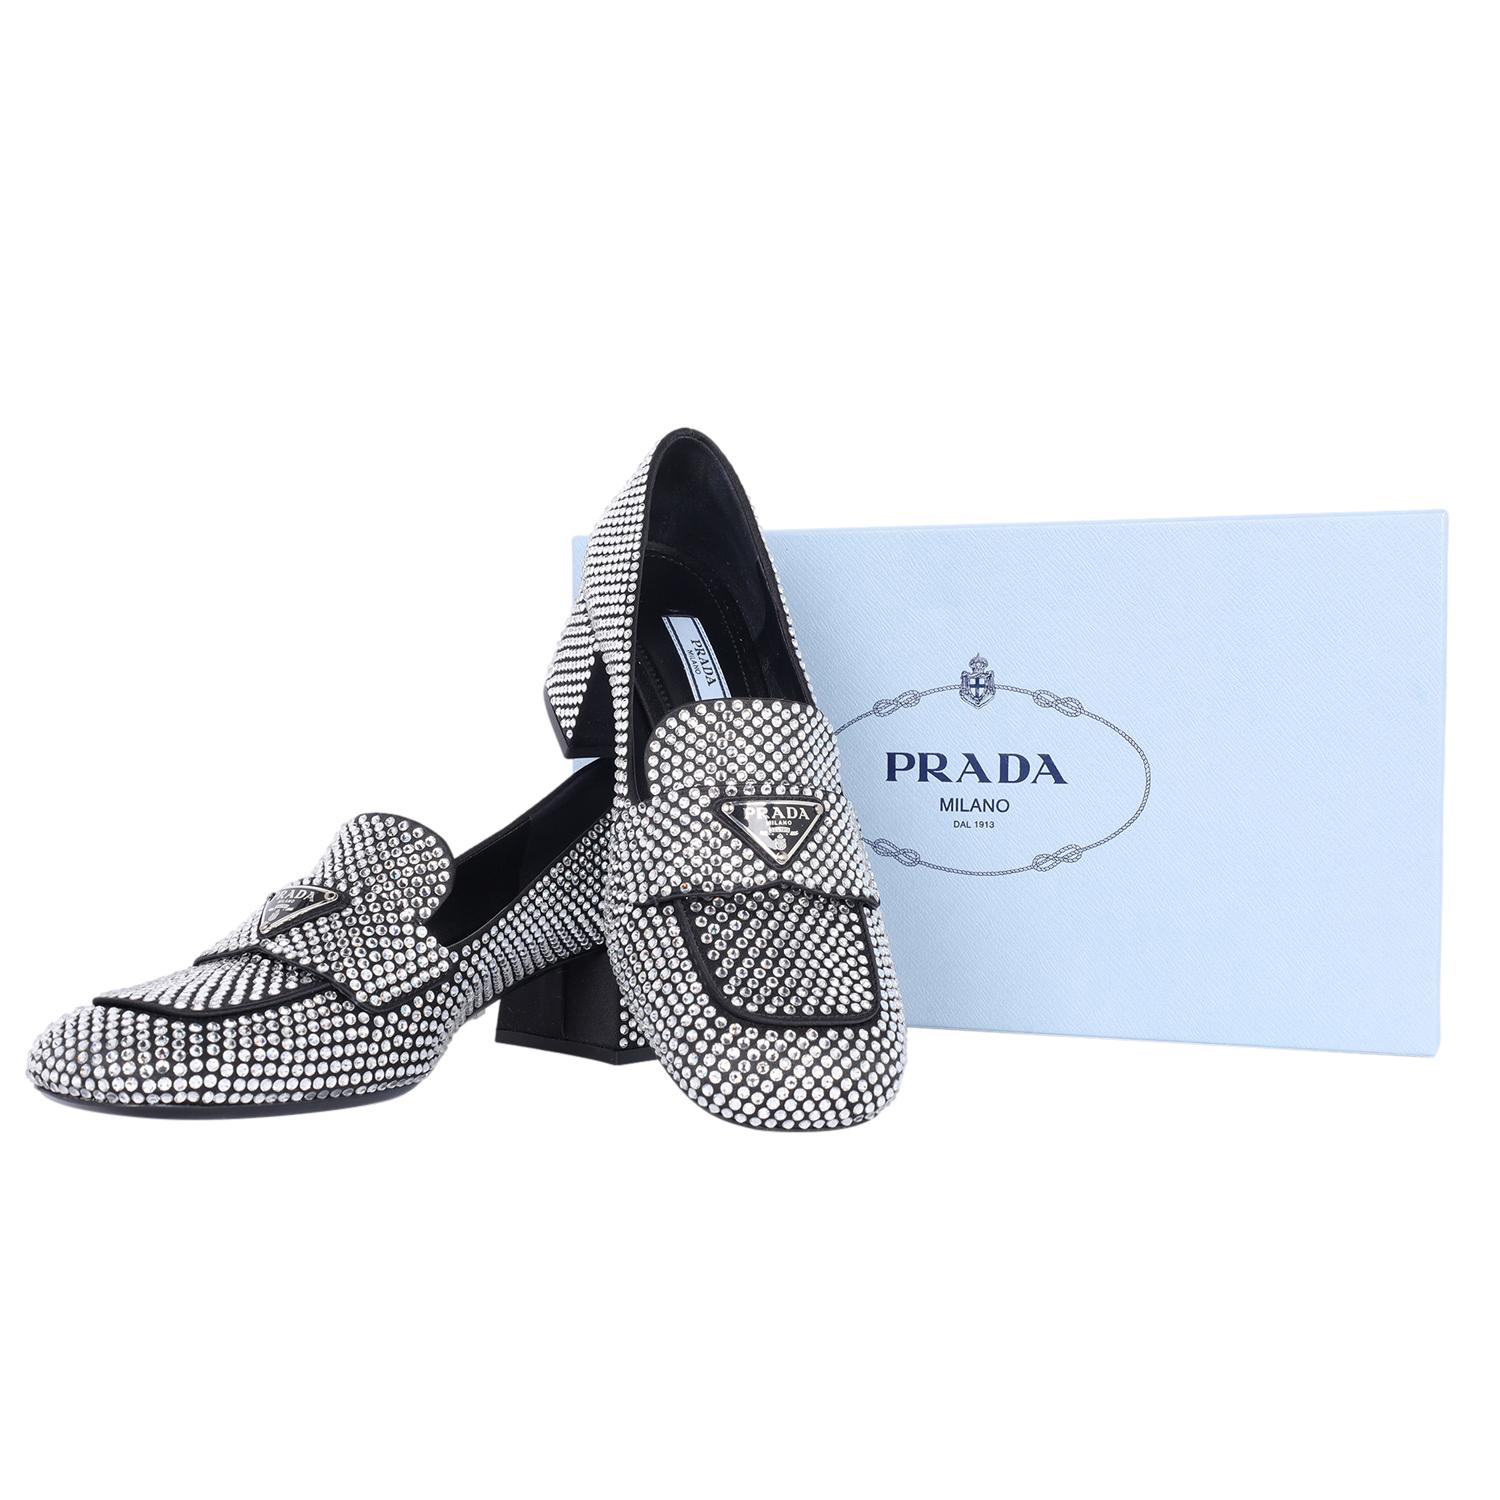 Authentique NEW Prada crystal embellished logo loafer pump shoes. Ces chaussures sont tout simplement magnifiques ! 

Vous allez adorer l'éclat.

Fabriqué en Italie   Taille 35.5 - convient à la taille 6 US

Taille : EU 35.5 (Approx. US 6) Regular